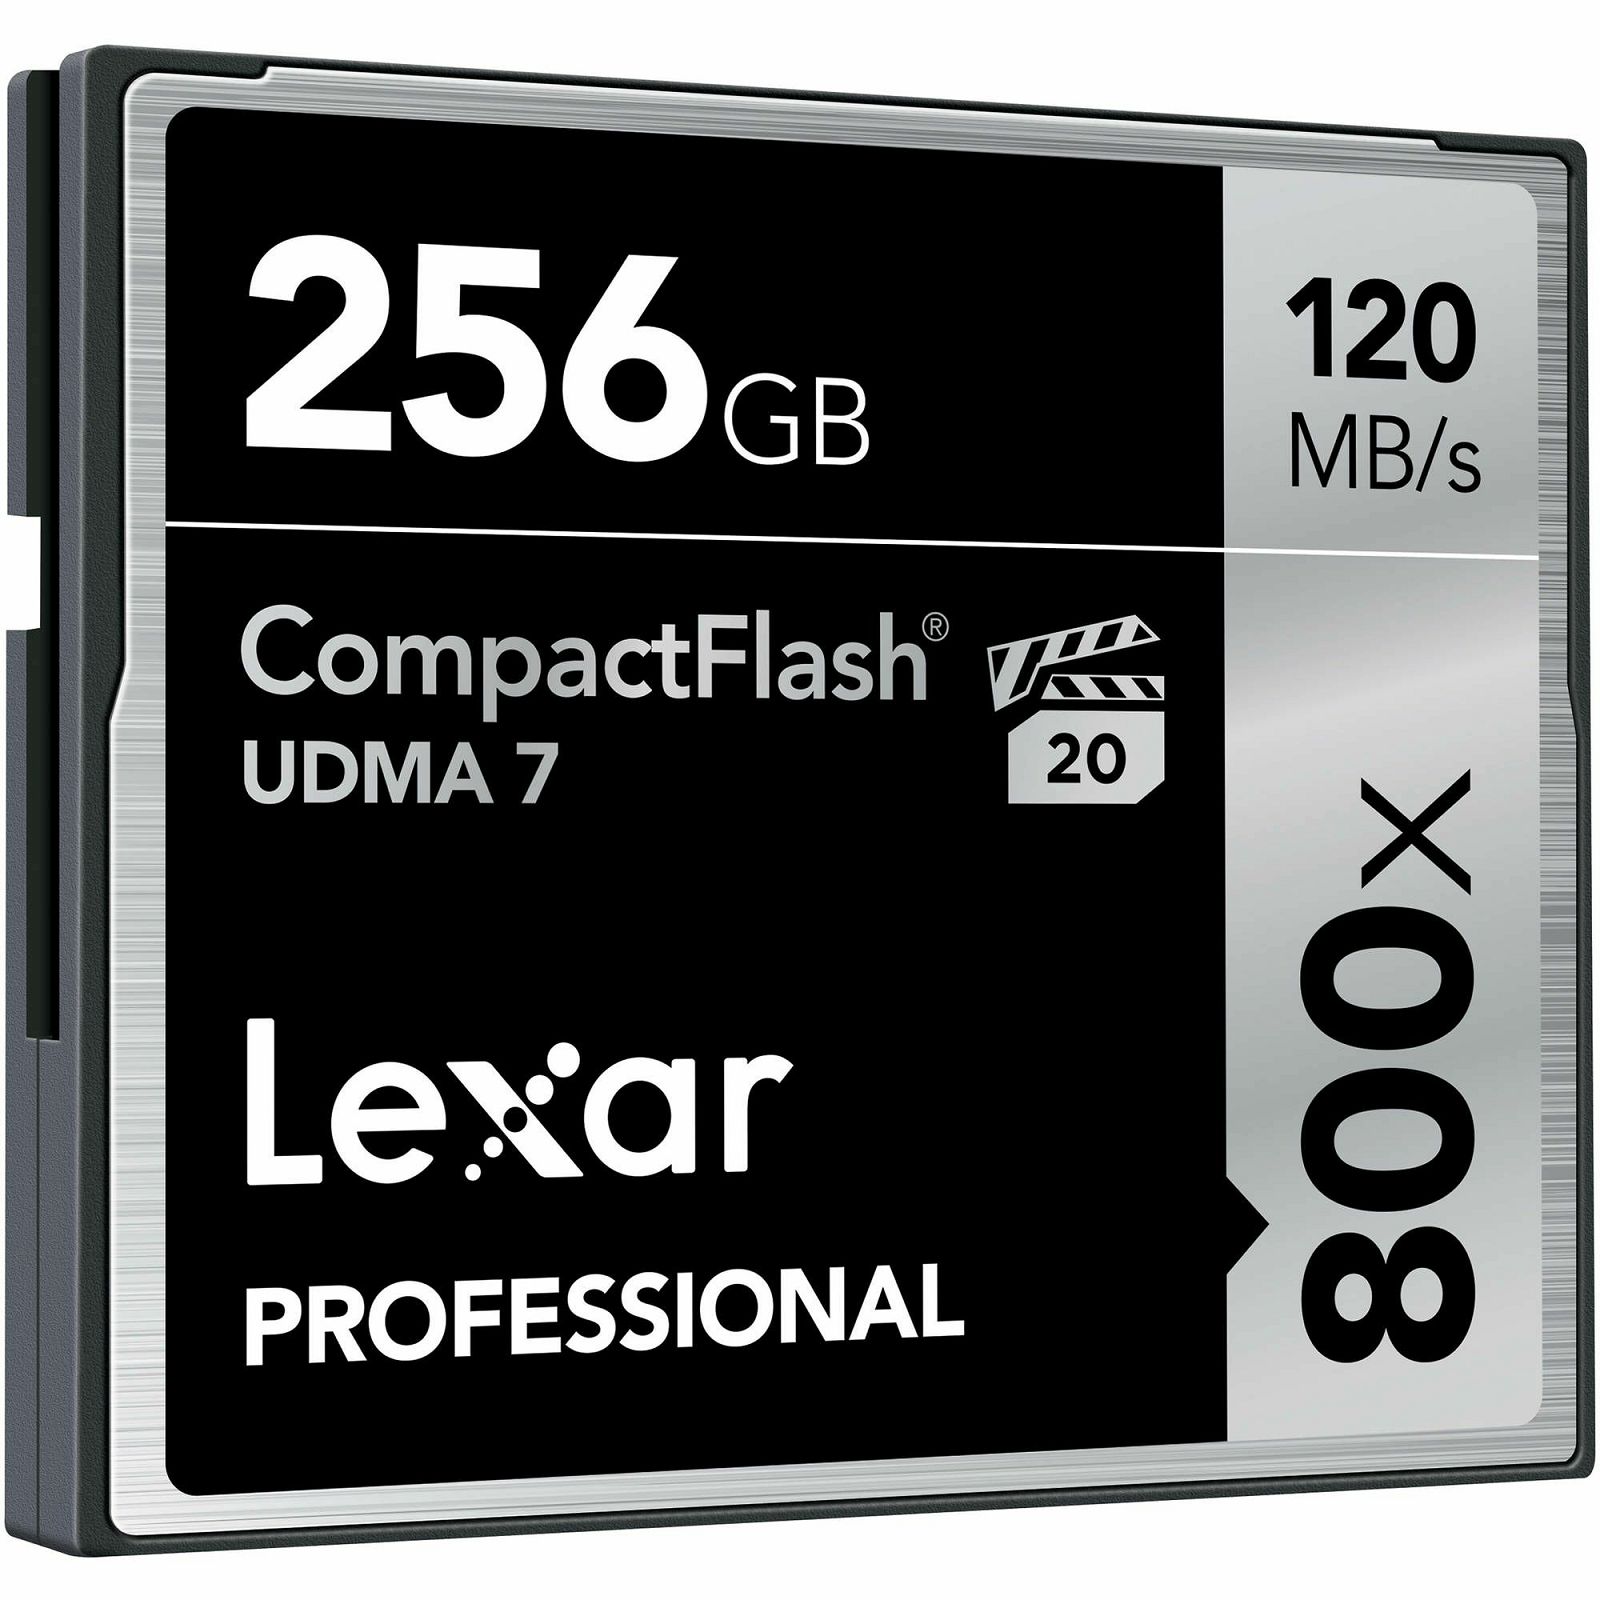 Lexar CF 256GB 800x 120MB/s Professional UDMA Compact Flash Card memorijska kartica (LCF256CRBEU800)